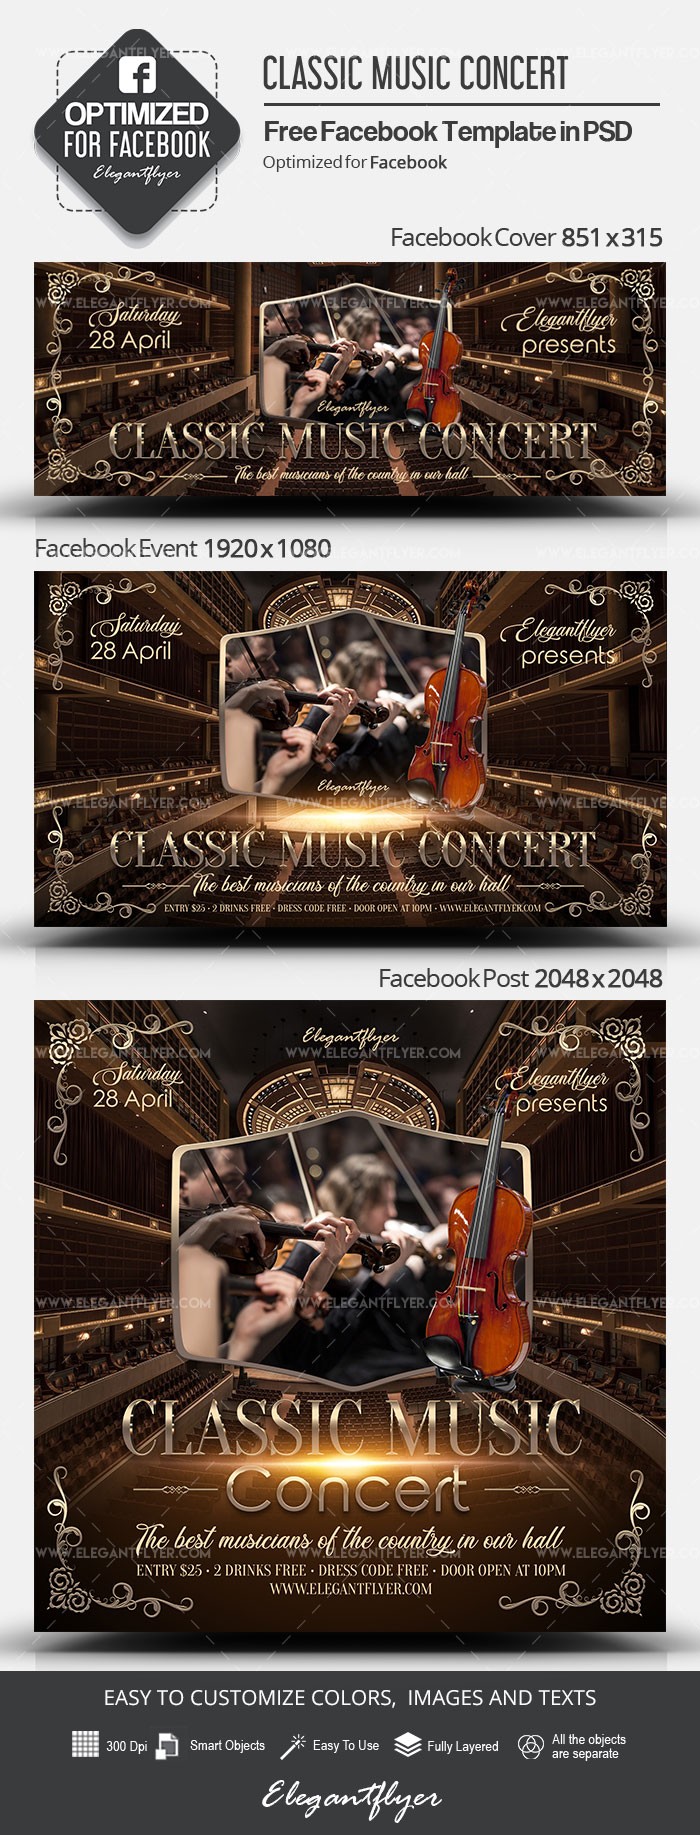 Concierto de música clásica en Facebook by ElegantFlyer